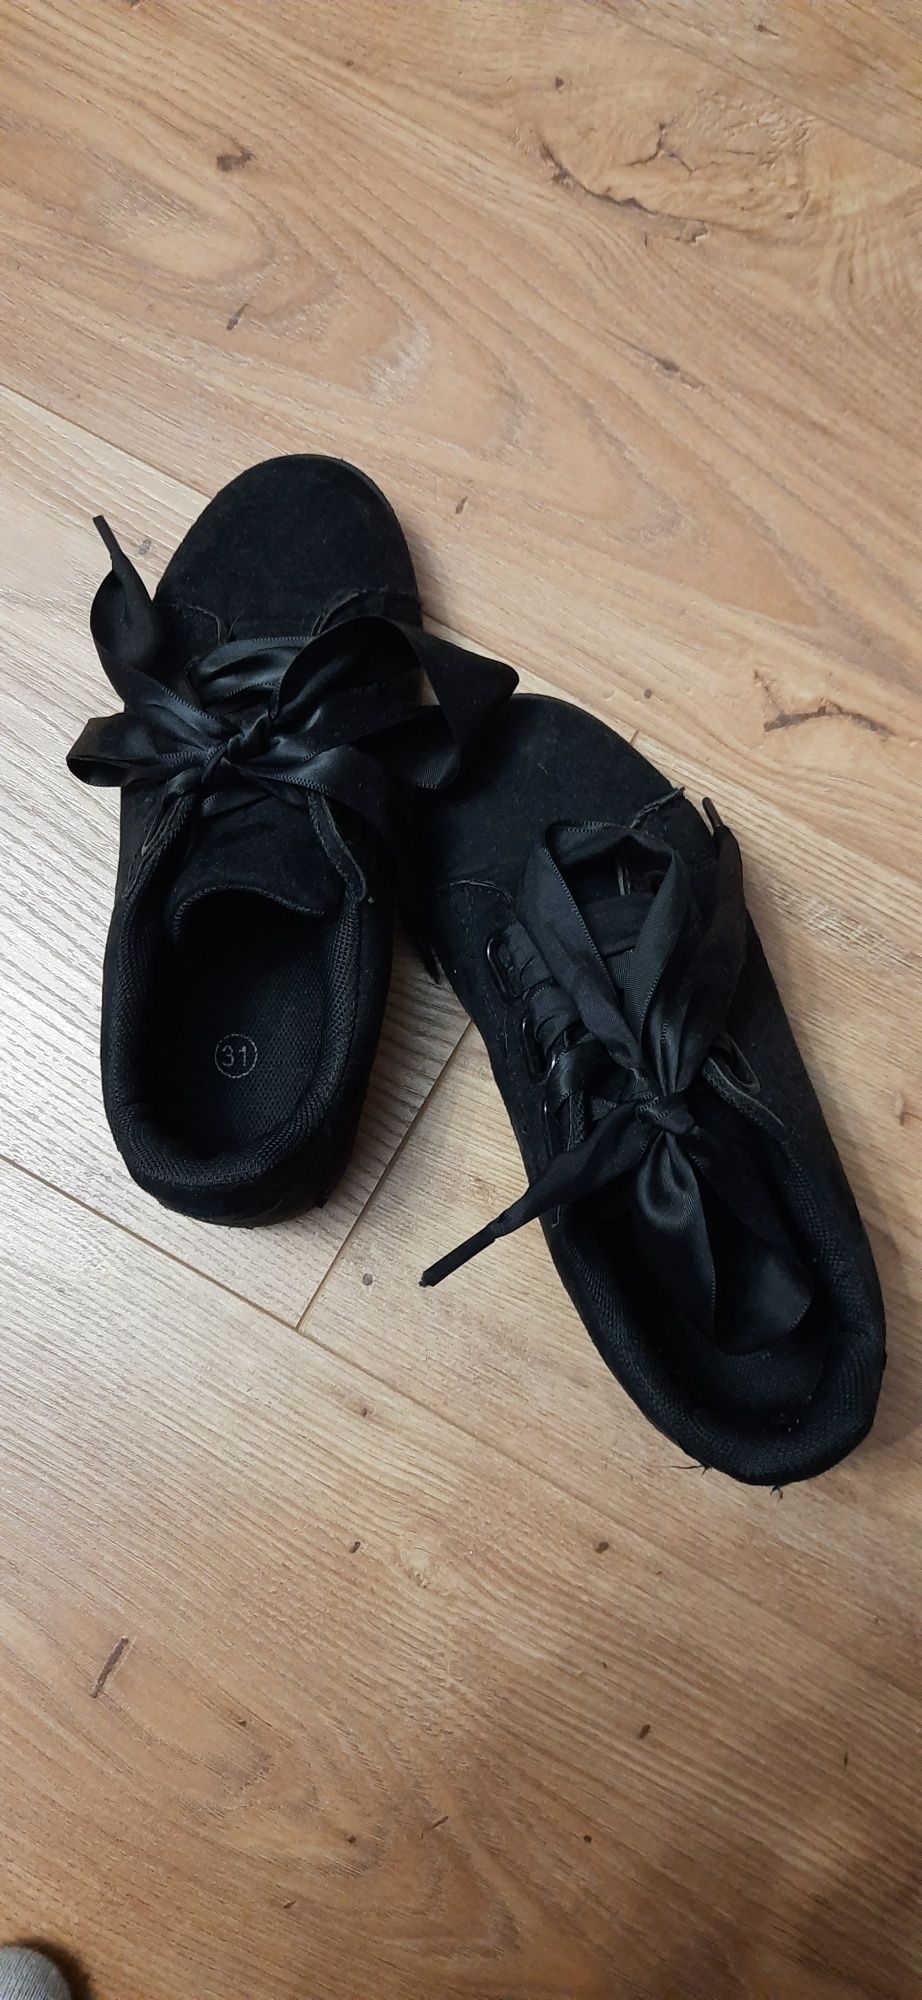 Trampki buty czarne zamszowe 31 wiązane